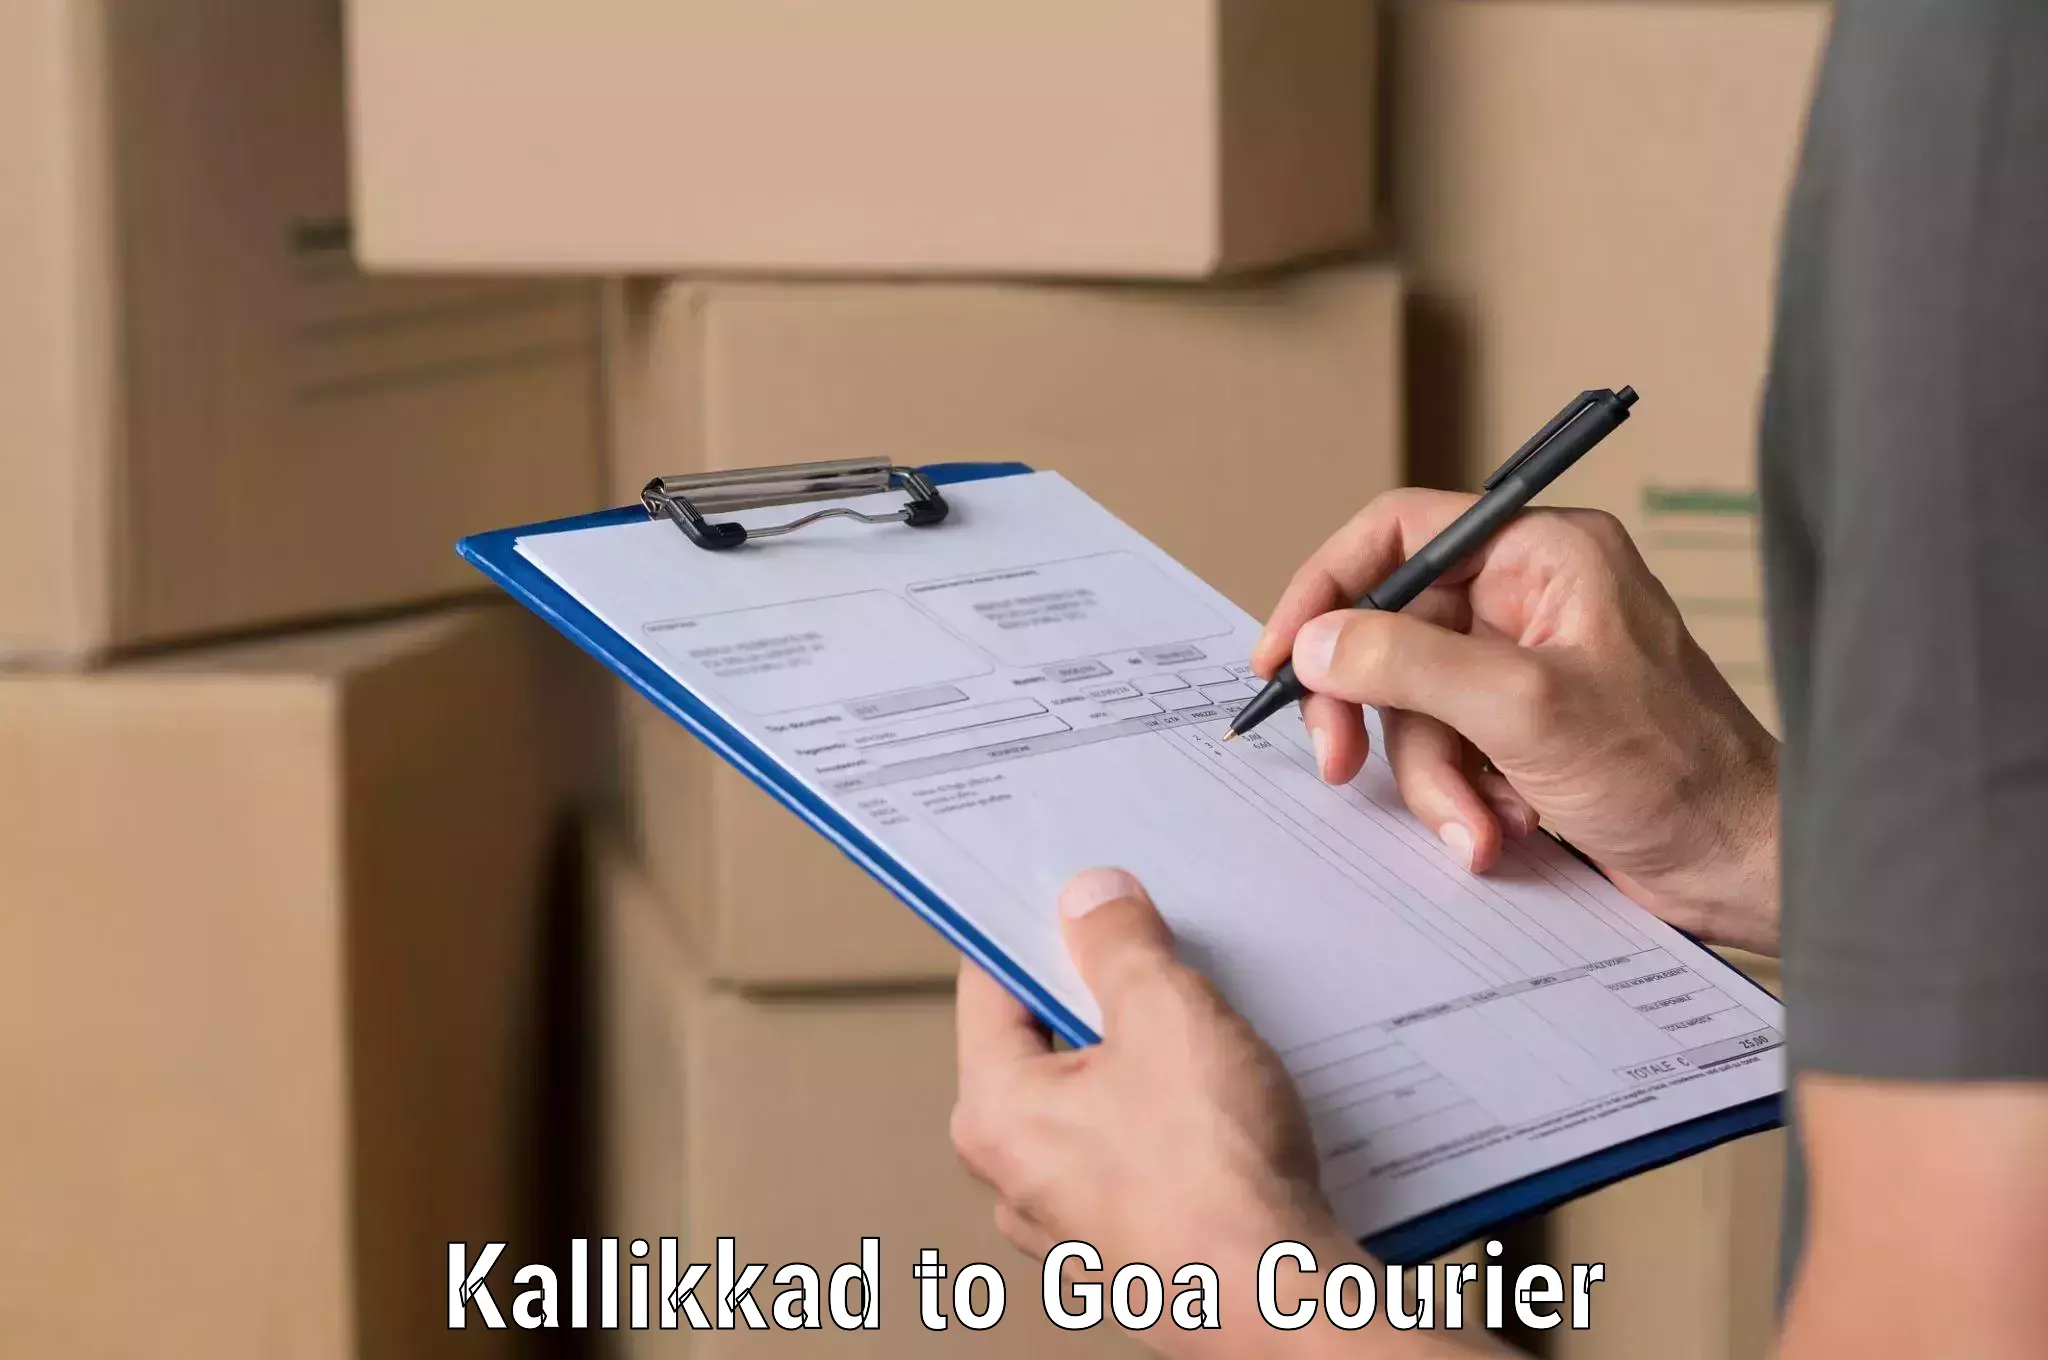 State-of-the-art courier technology Kallikkad to Goa